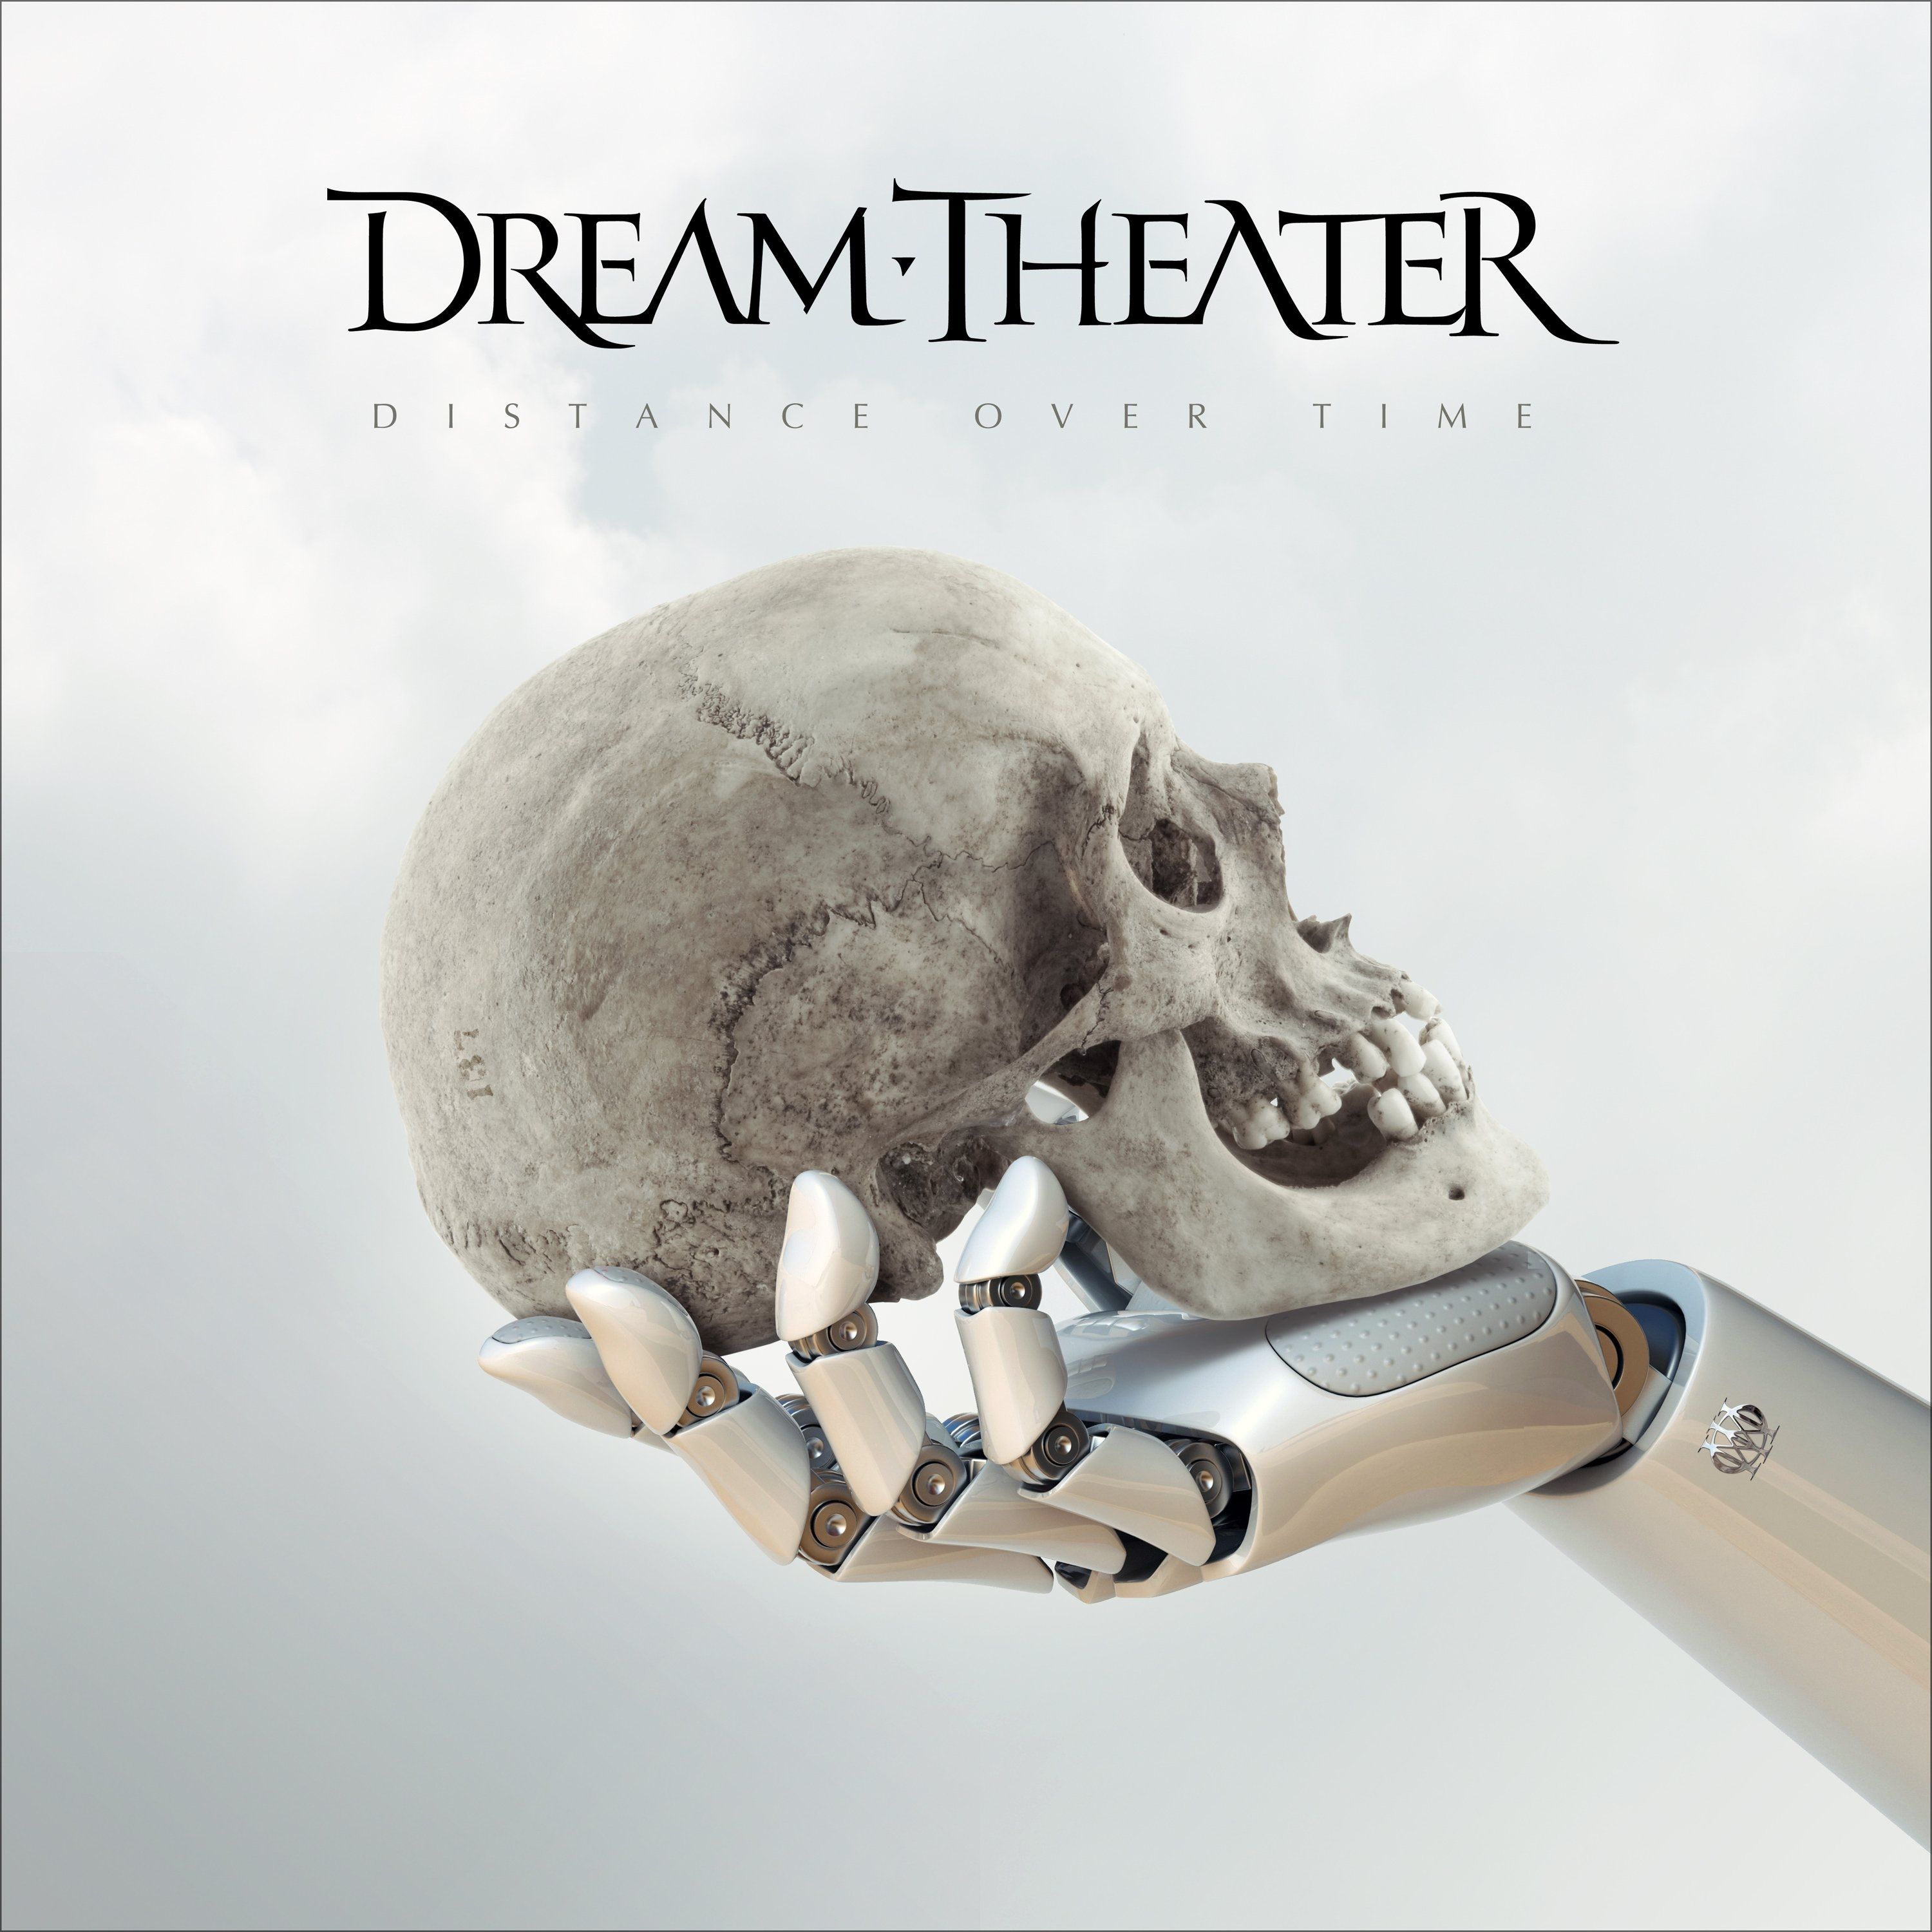 Imagem do álbum Distance Over Time do(a) artista Dream Theater